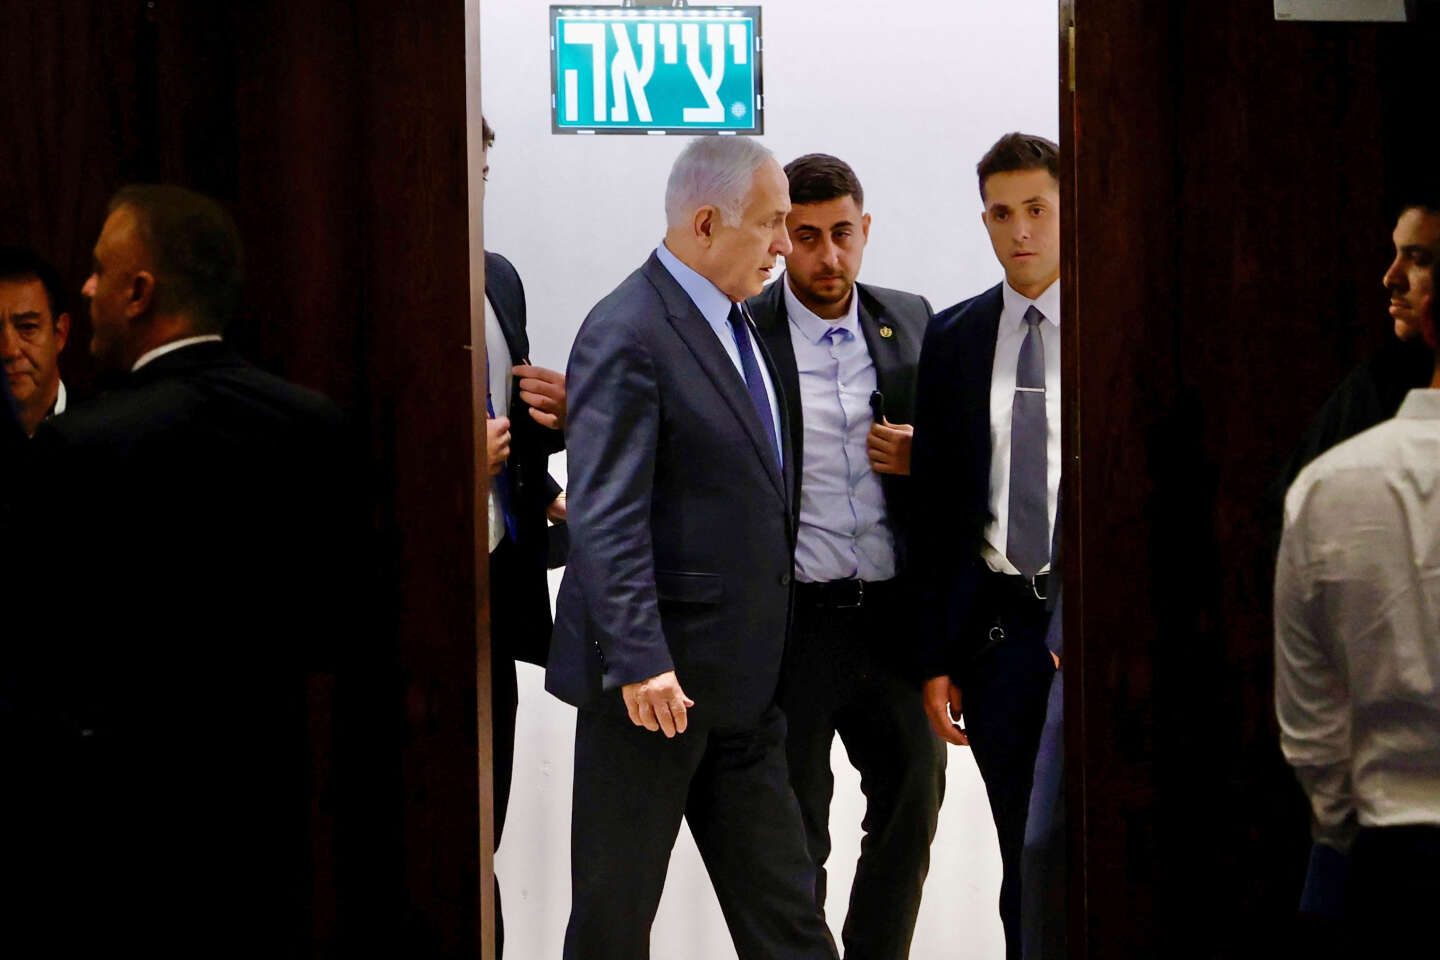 Angesichts der Wut auf der Straße kündigte der israelische Premierminister eine „Pause“ bei der umstrittenen Reform an, ohne sie aufzugeben.